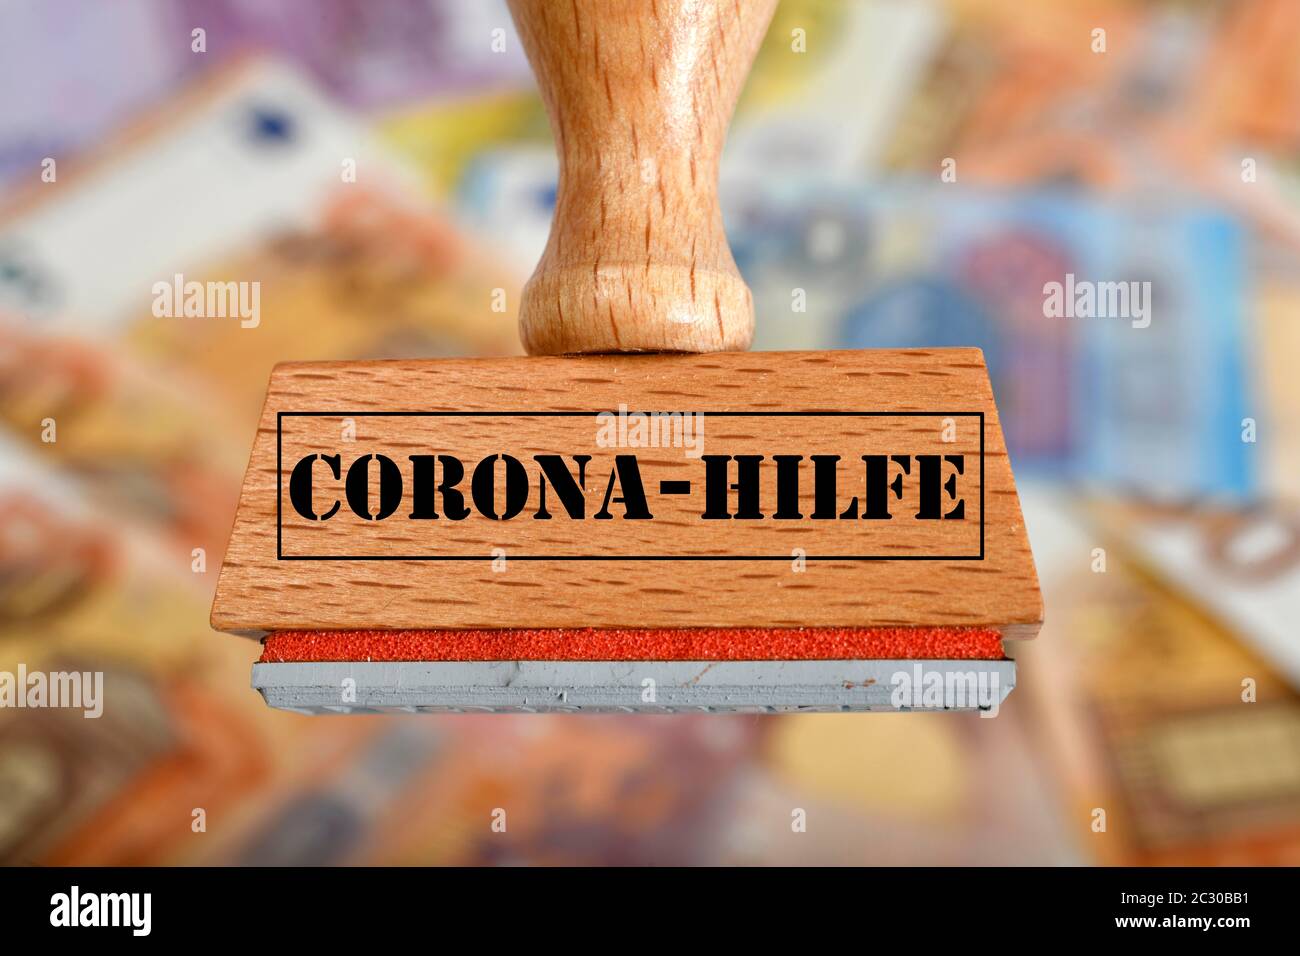 Imagen de símbolo paquete de estímulo económico, sello con la inscripción CORONA-HILFE, Alemania Foto de stock